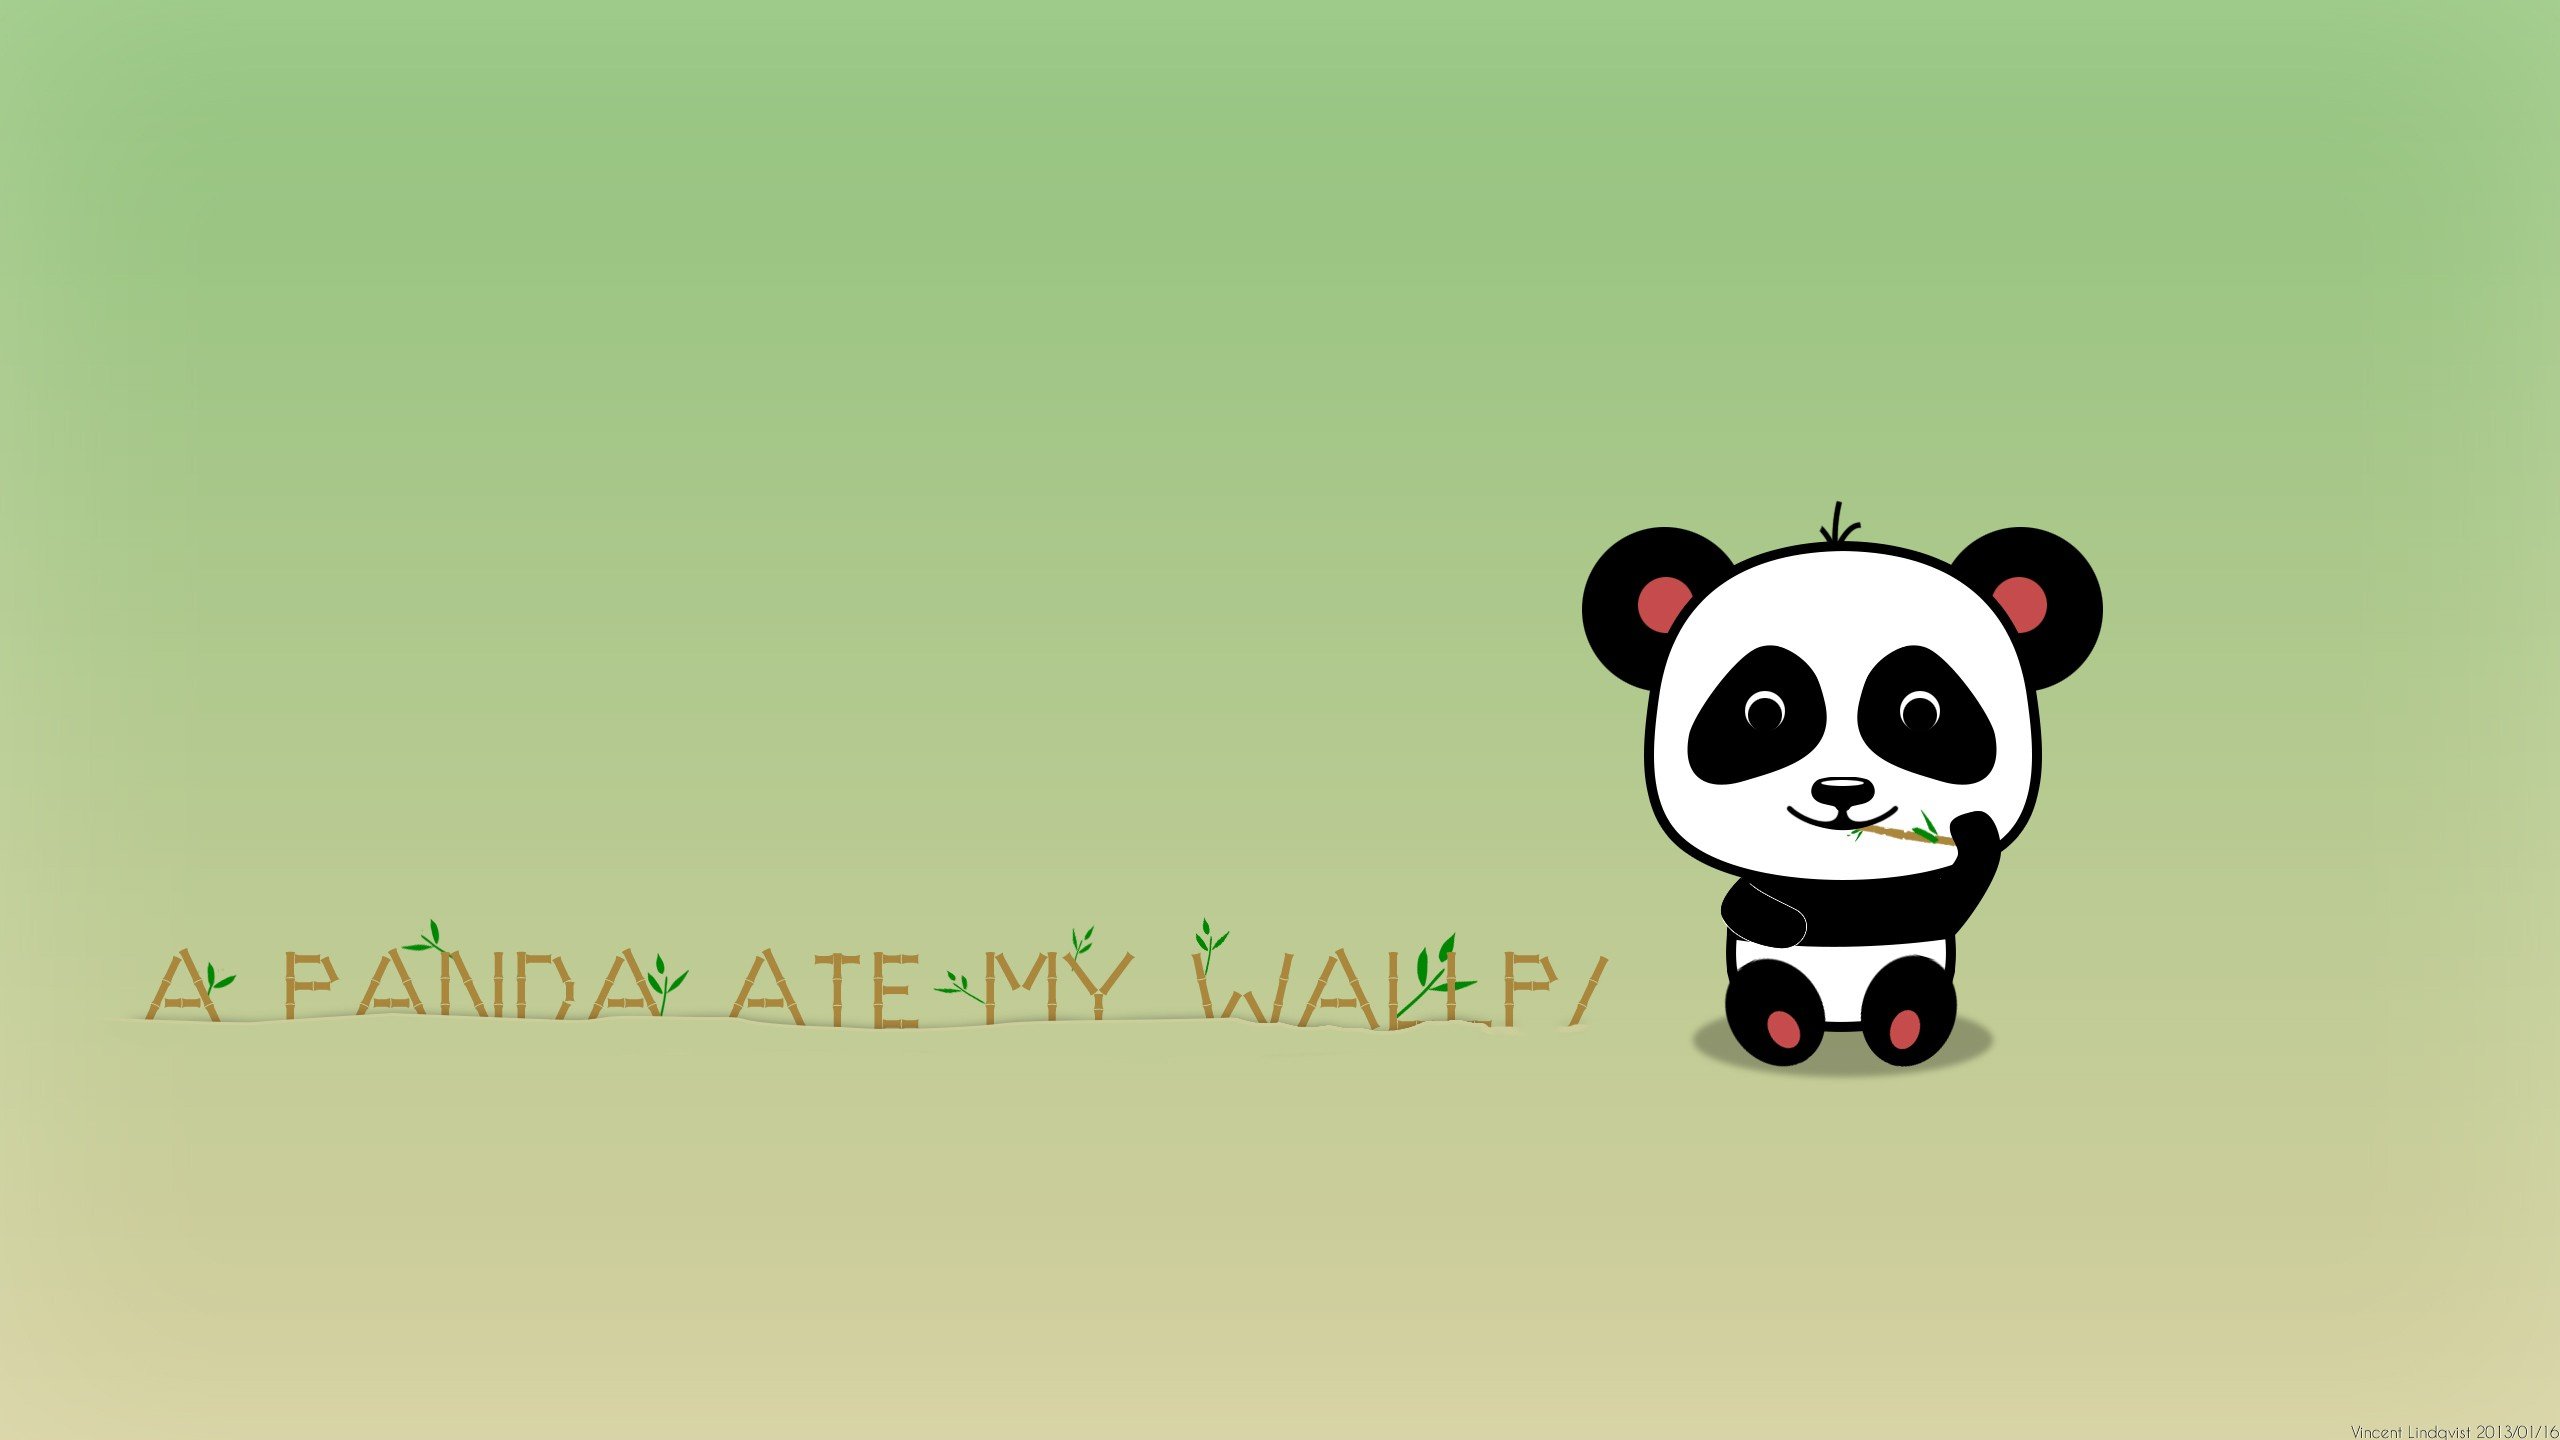 Panda Plush Cartoon Wallpaper Royalty Free SVG, Cliparts, Vectors, and  Stock Illustration. Image 8495205.